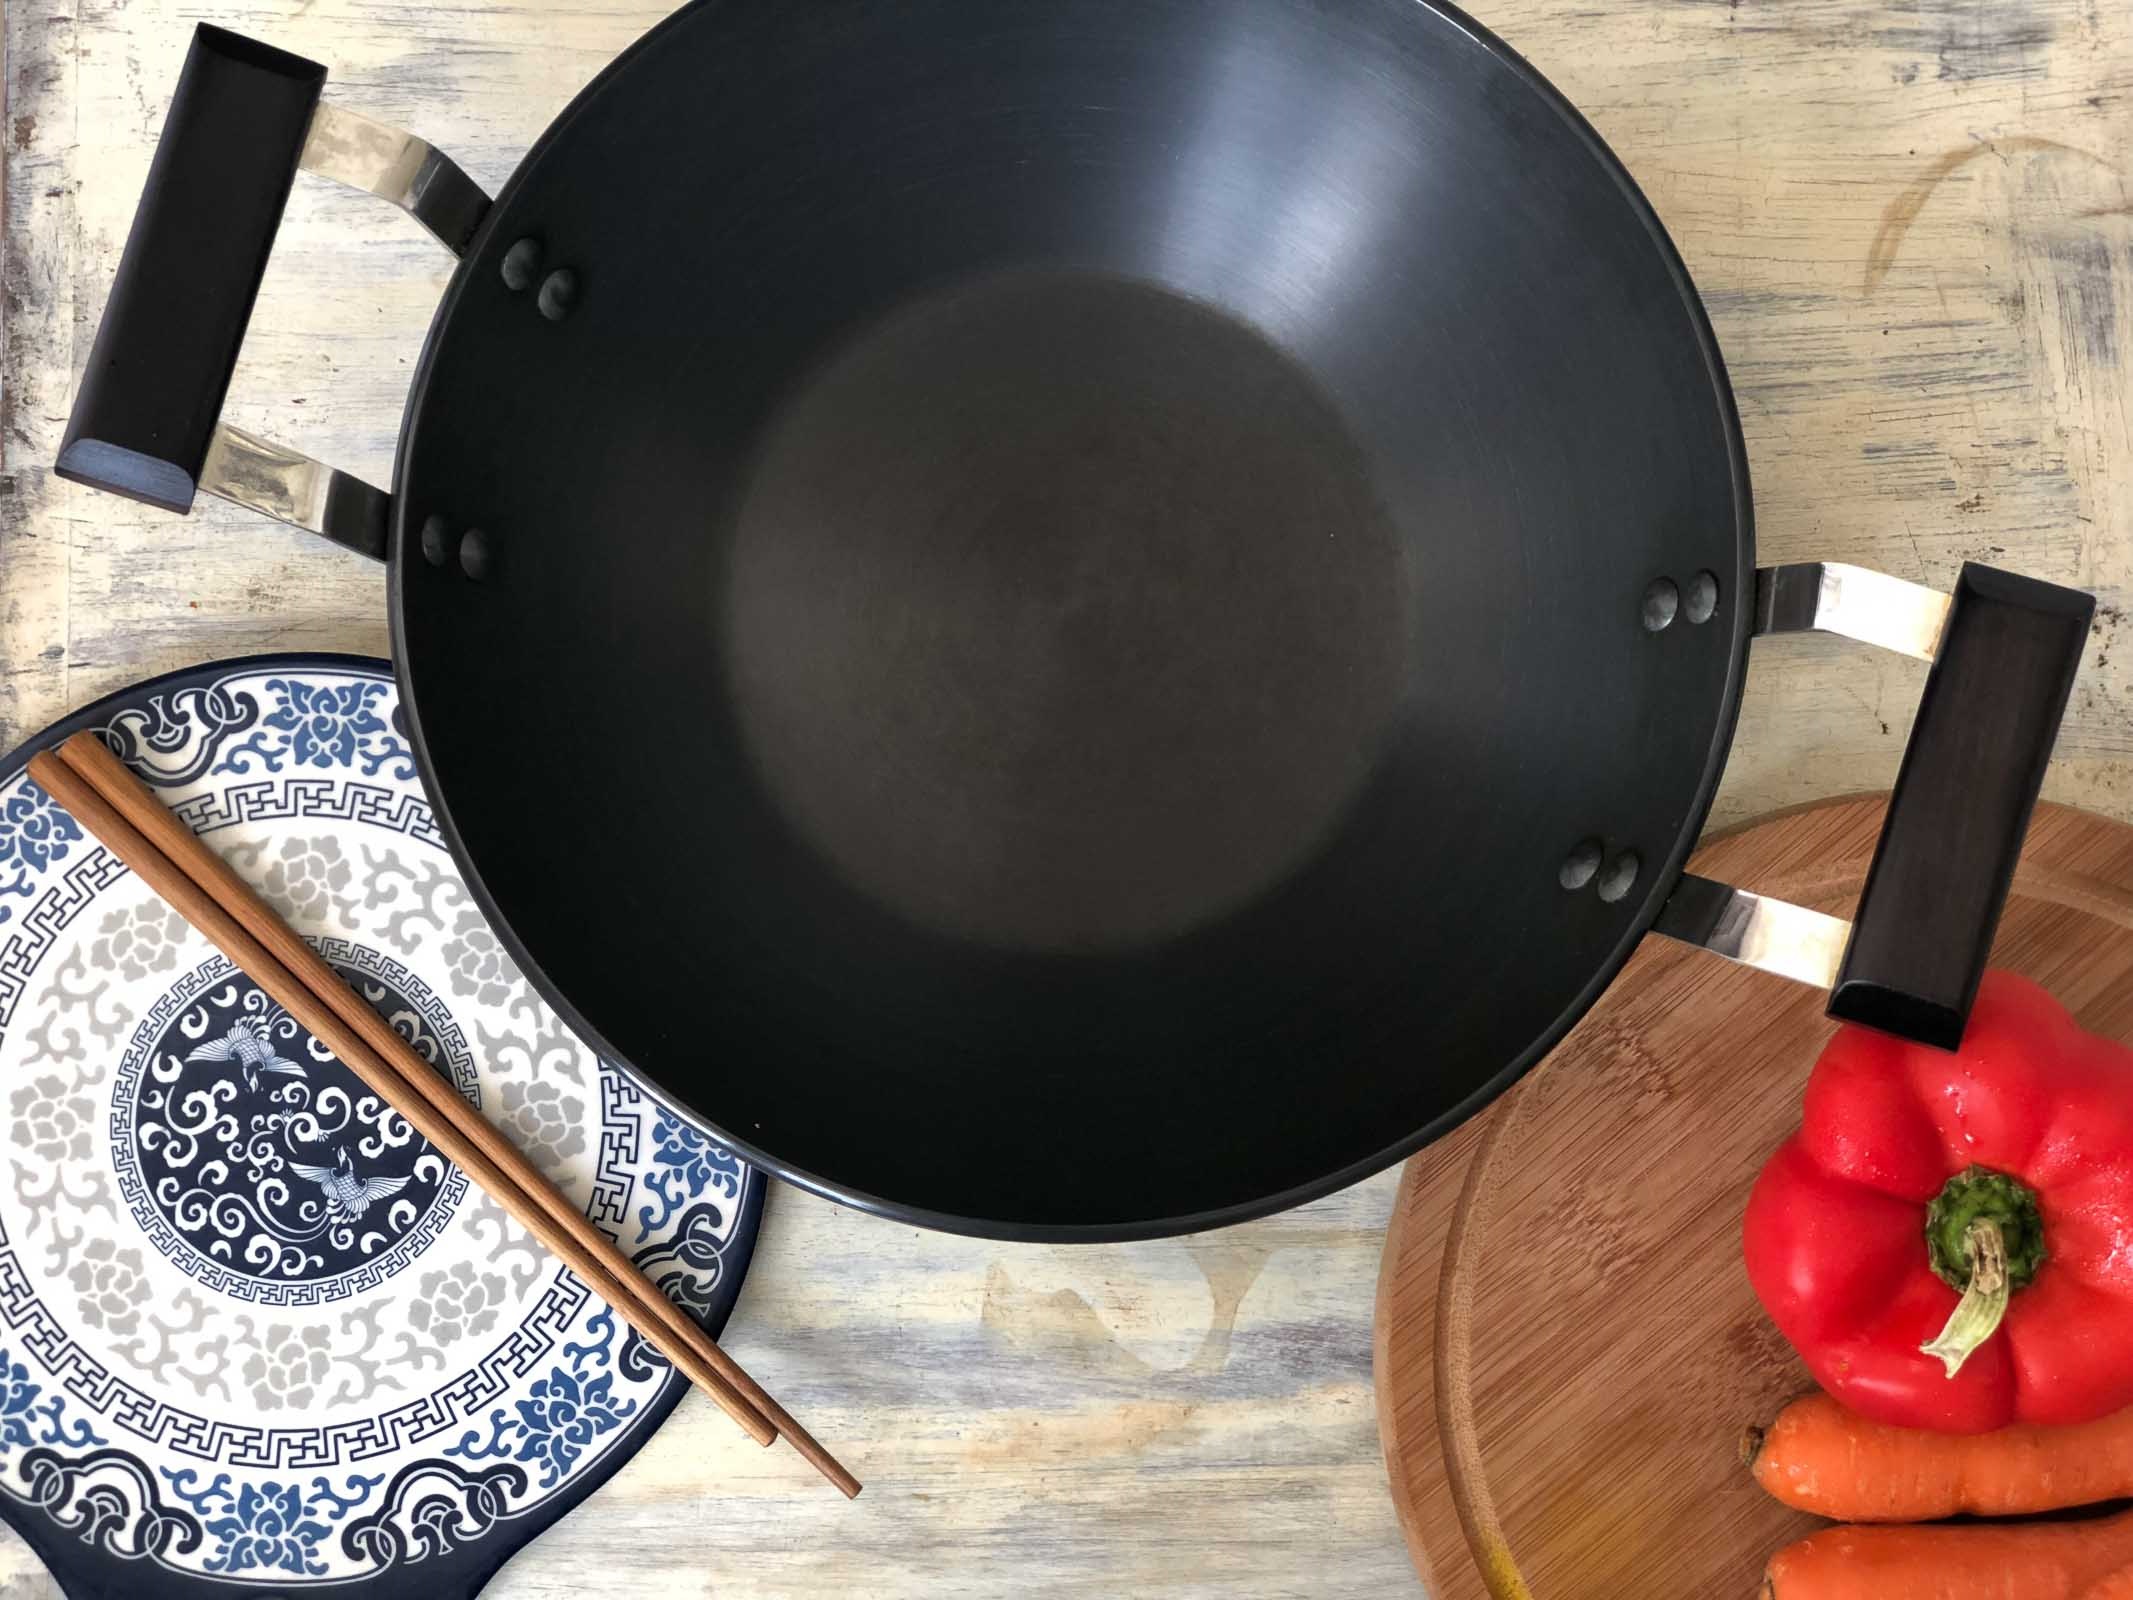 kadai large stir fry pan